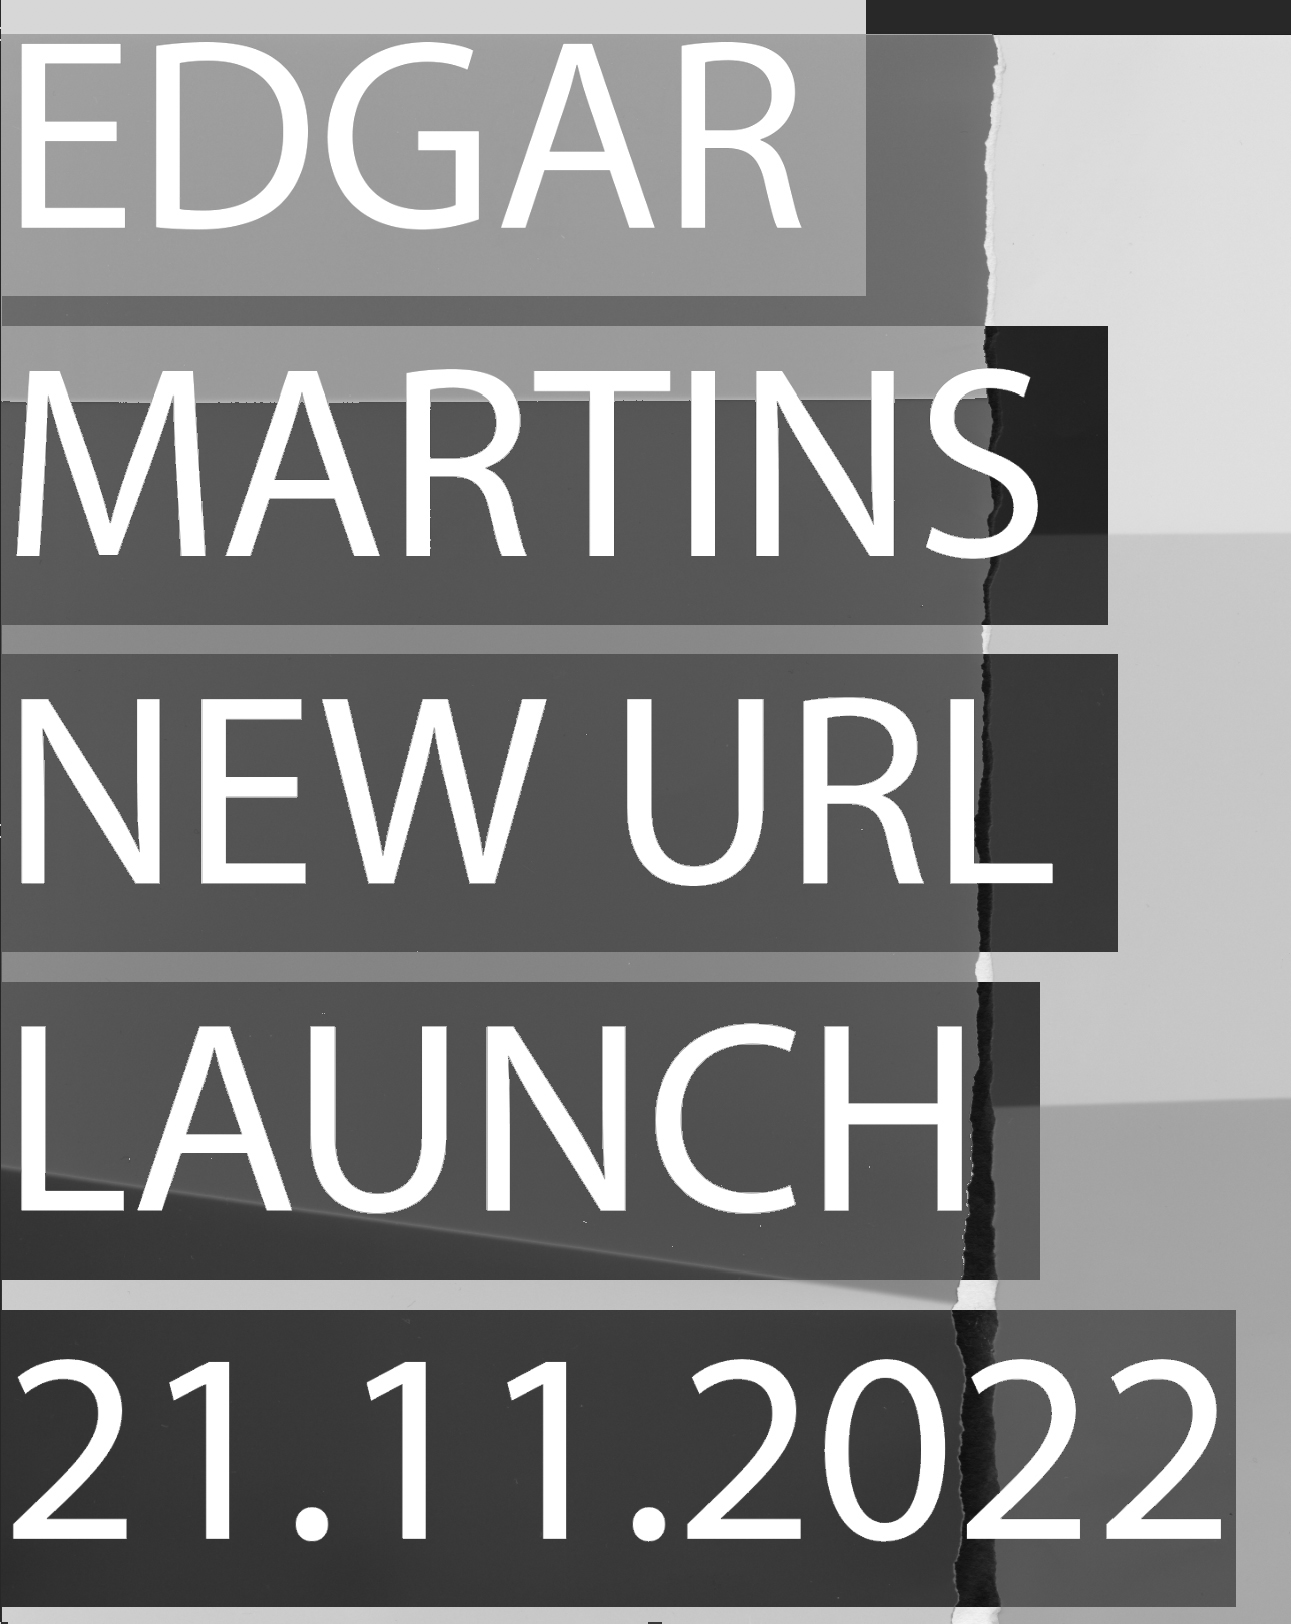 10681Edgar Martins’ website relaunch